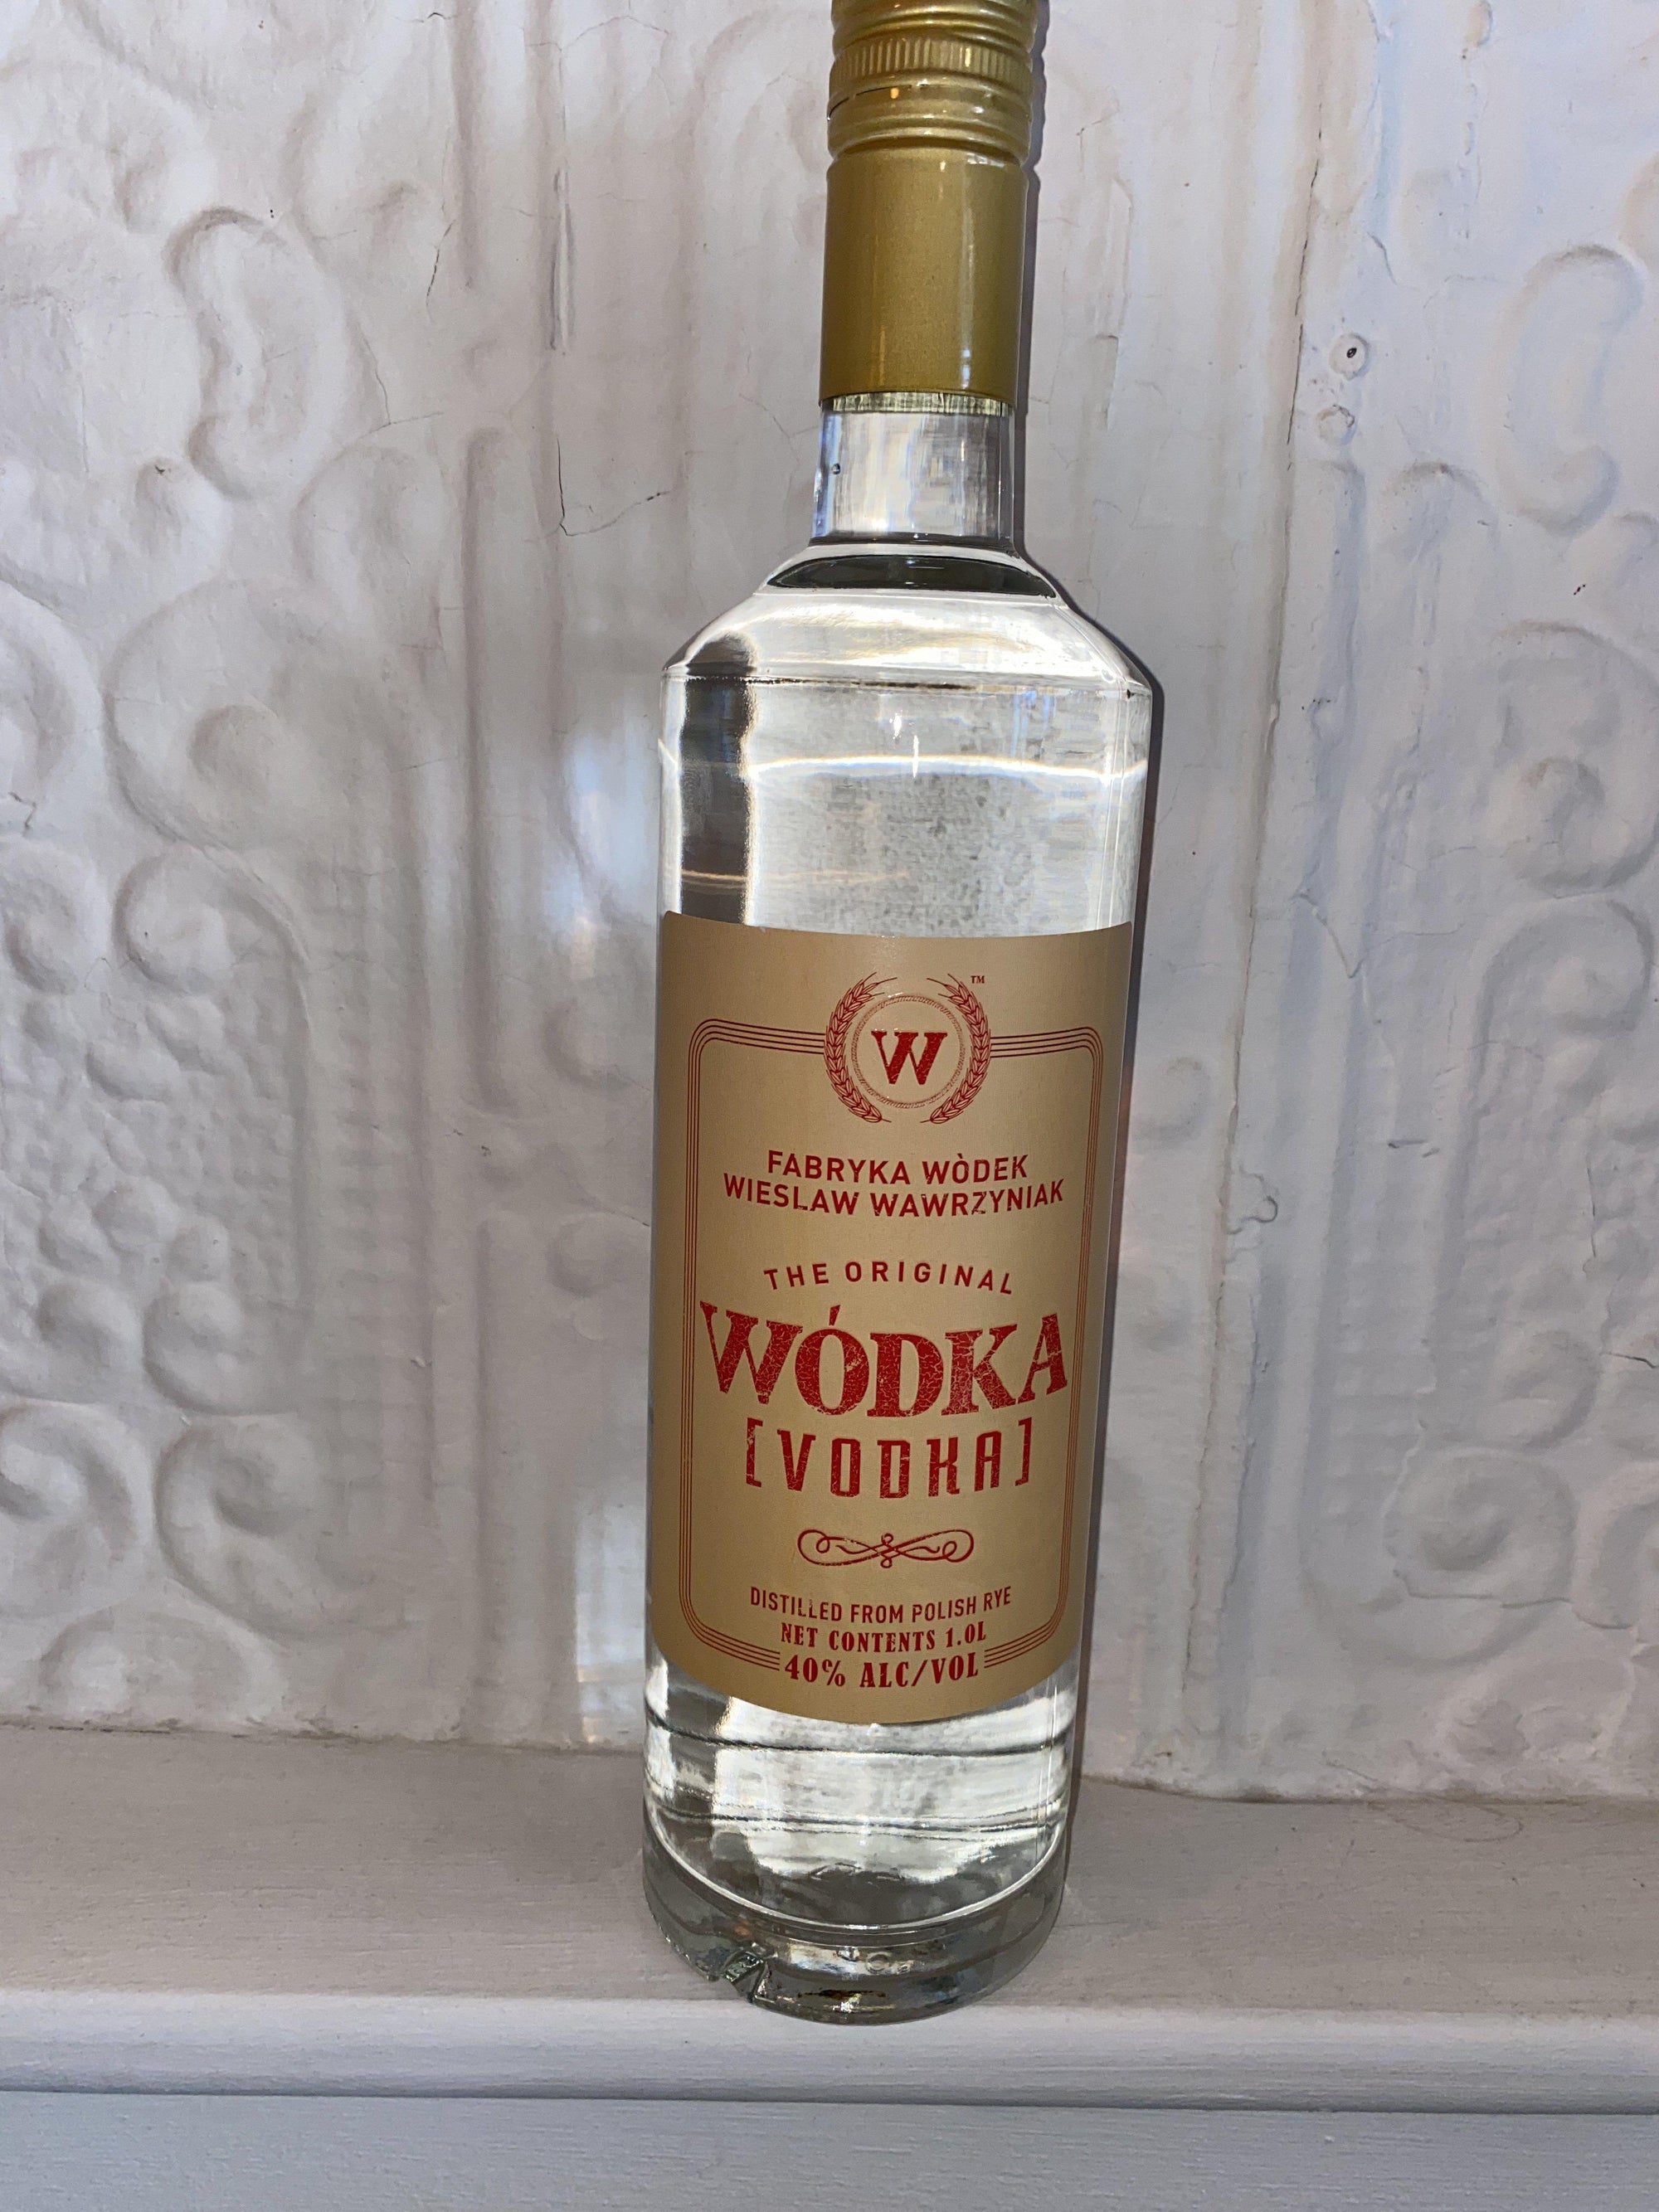 Monopolowa Potato Vodka 1L